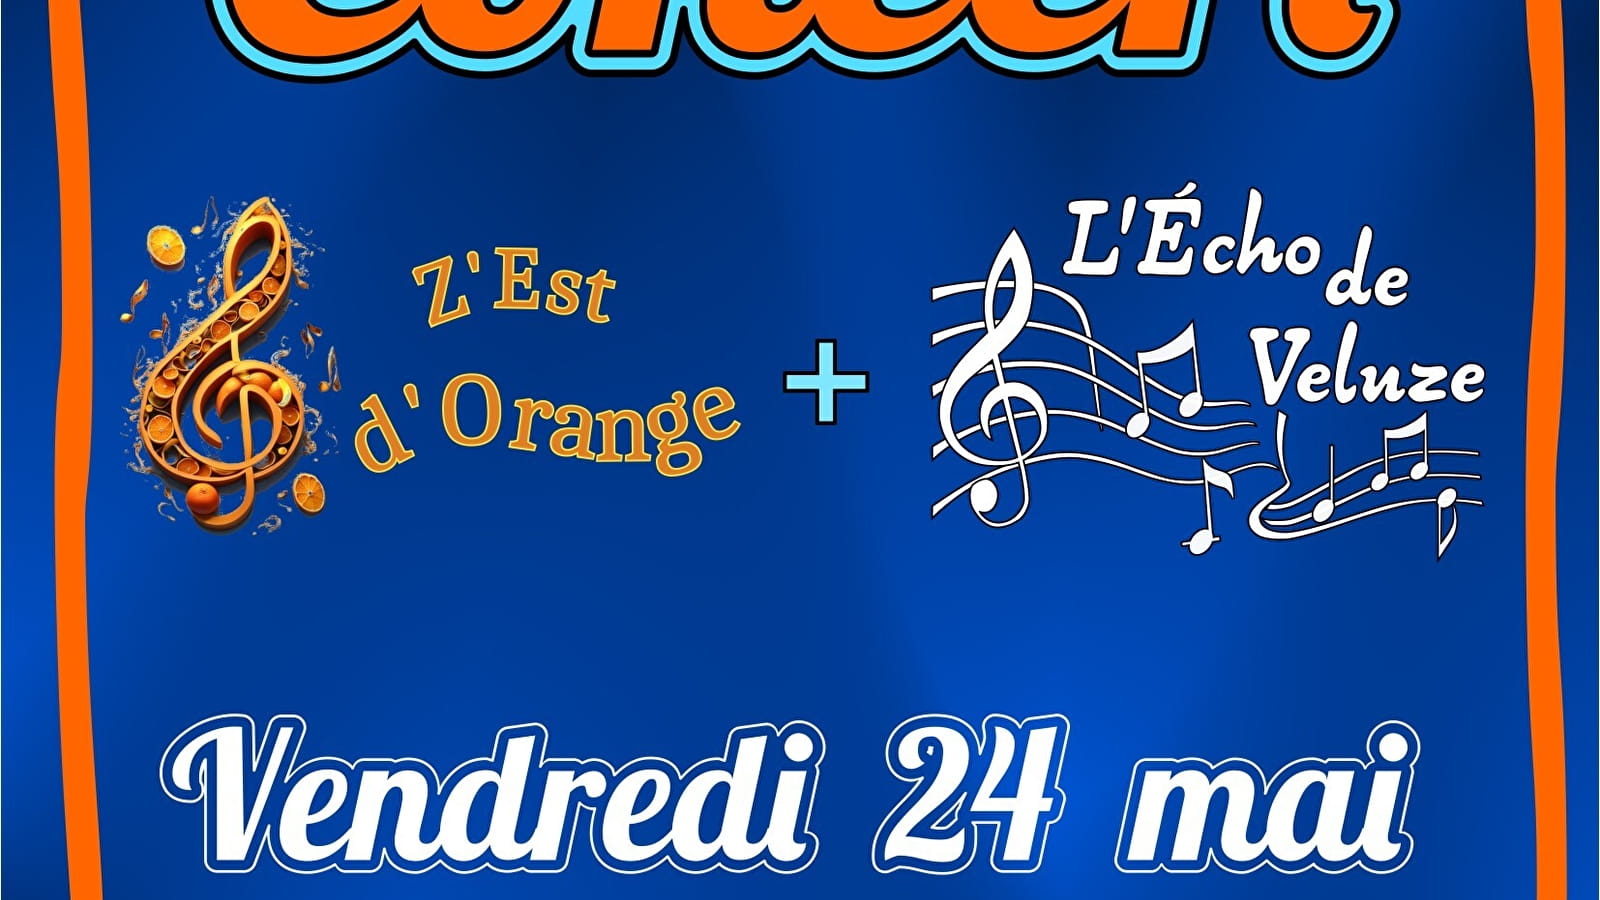 Concert by choirs Echo de Veluze + Z'est d'Orange